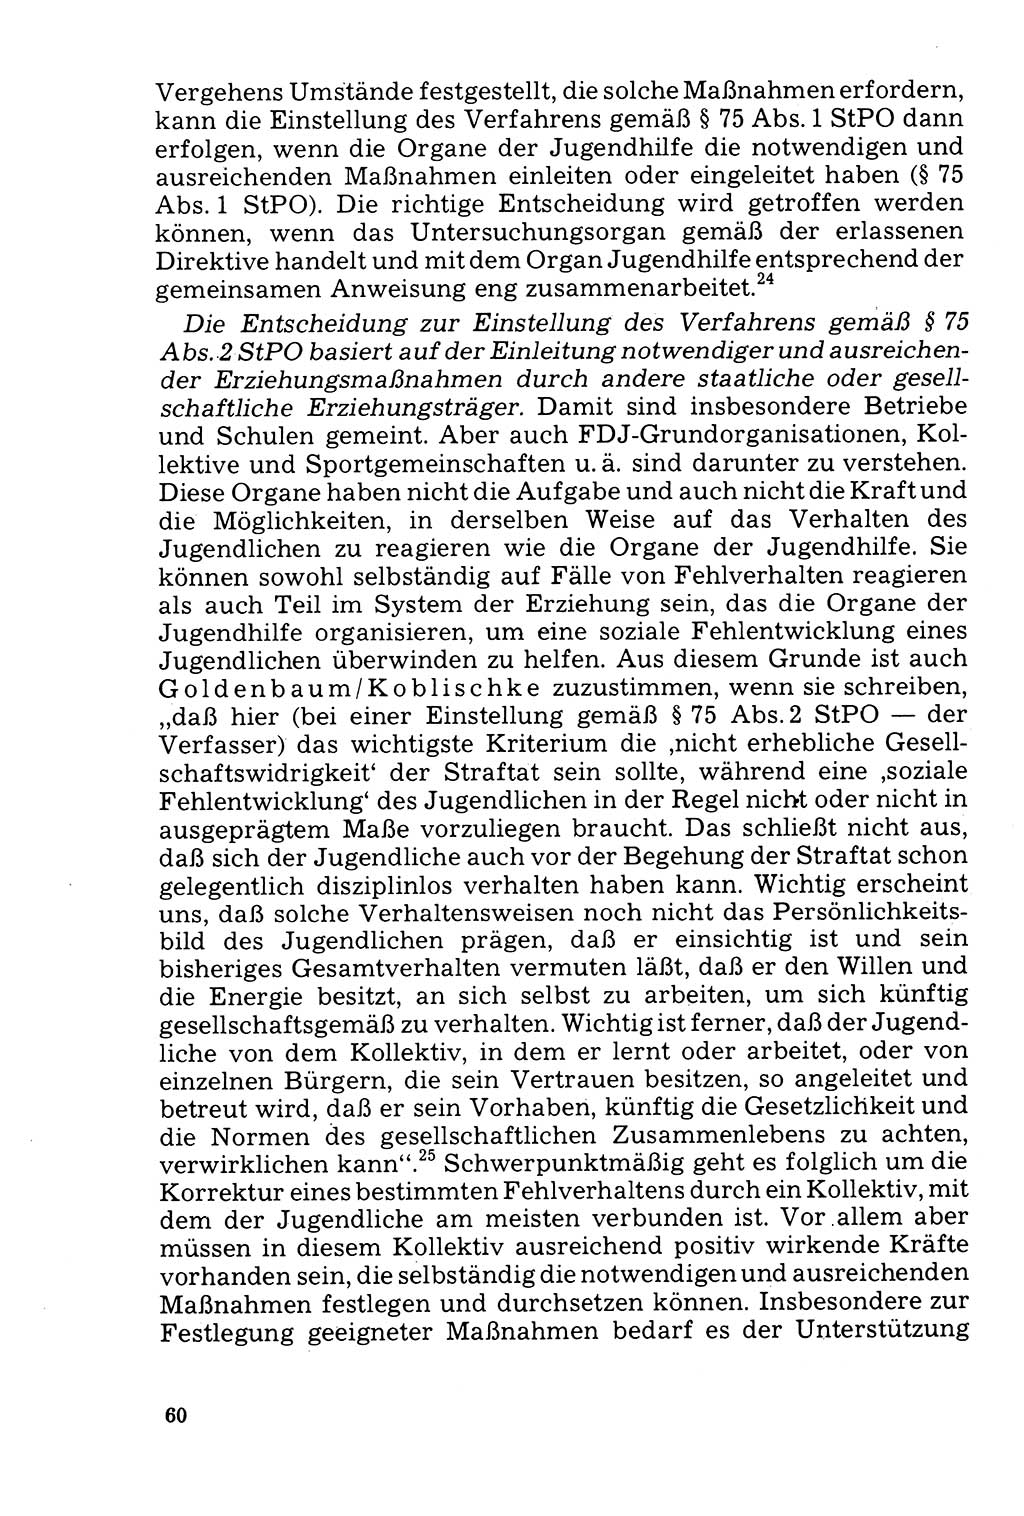 Der Abschluß des Ermittlungsverfahrens [Deutsche Demokratische Republik (DDR)] 1978, Seite 60 (Abschl. EV DDR 1978, S. 60)